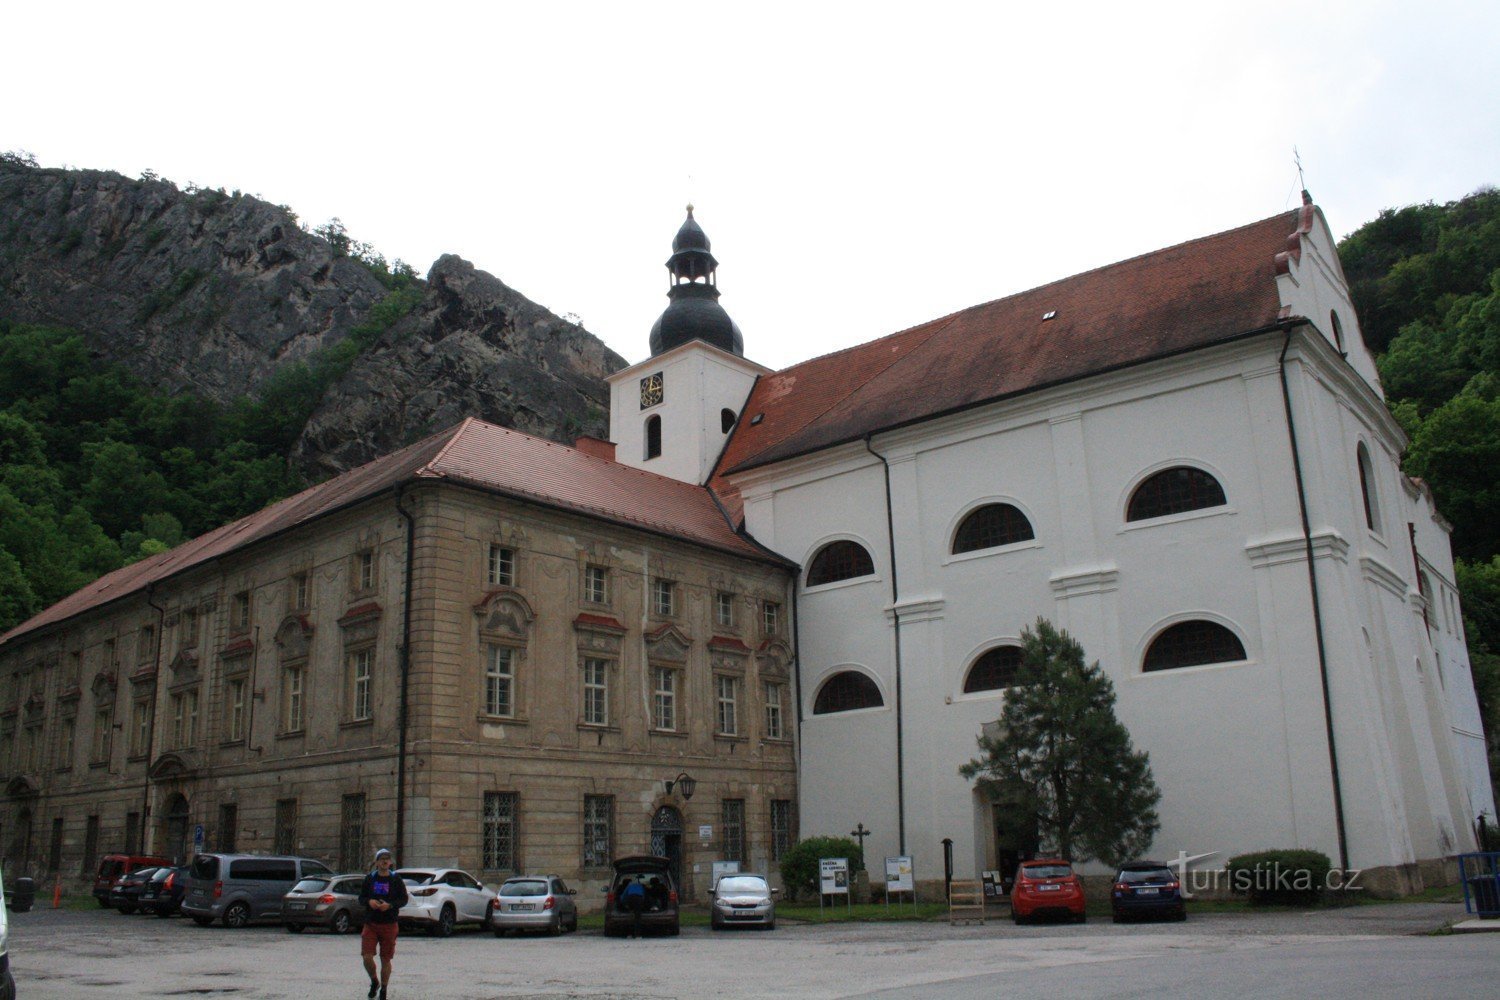 St. Jan pod Skalou und die Geburtskirche St. Johannes der Täufer, Höhle von St. Ivana und lebt